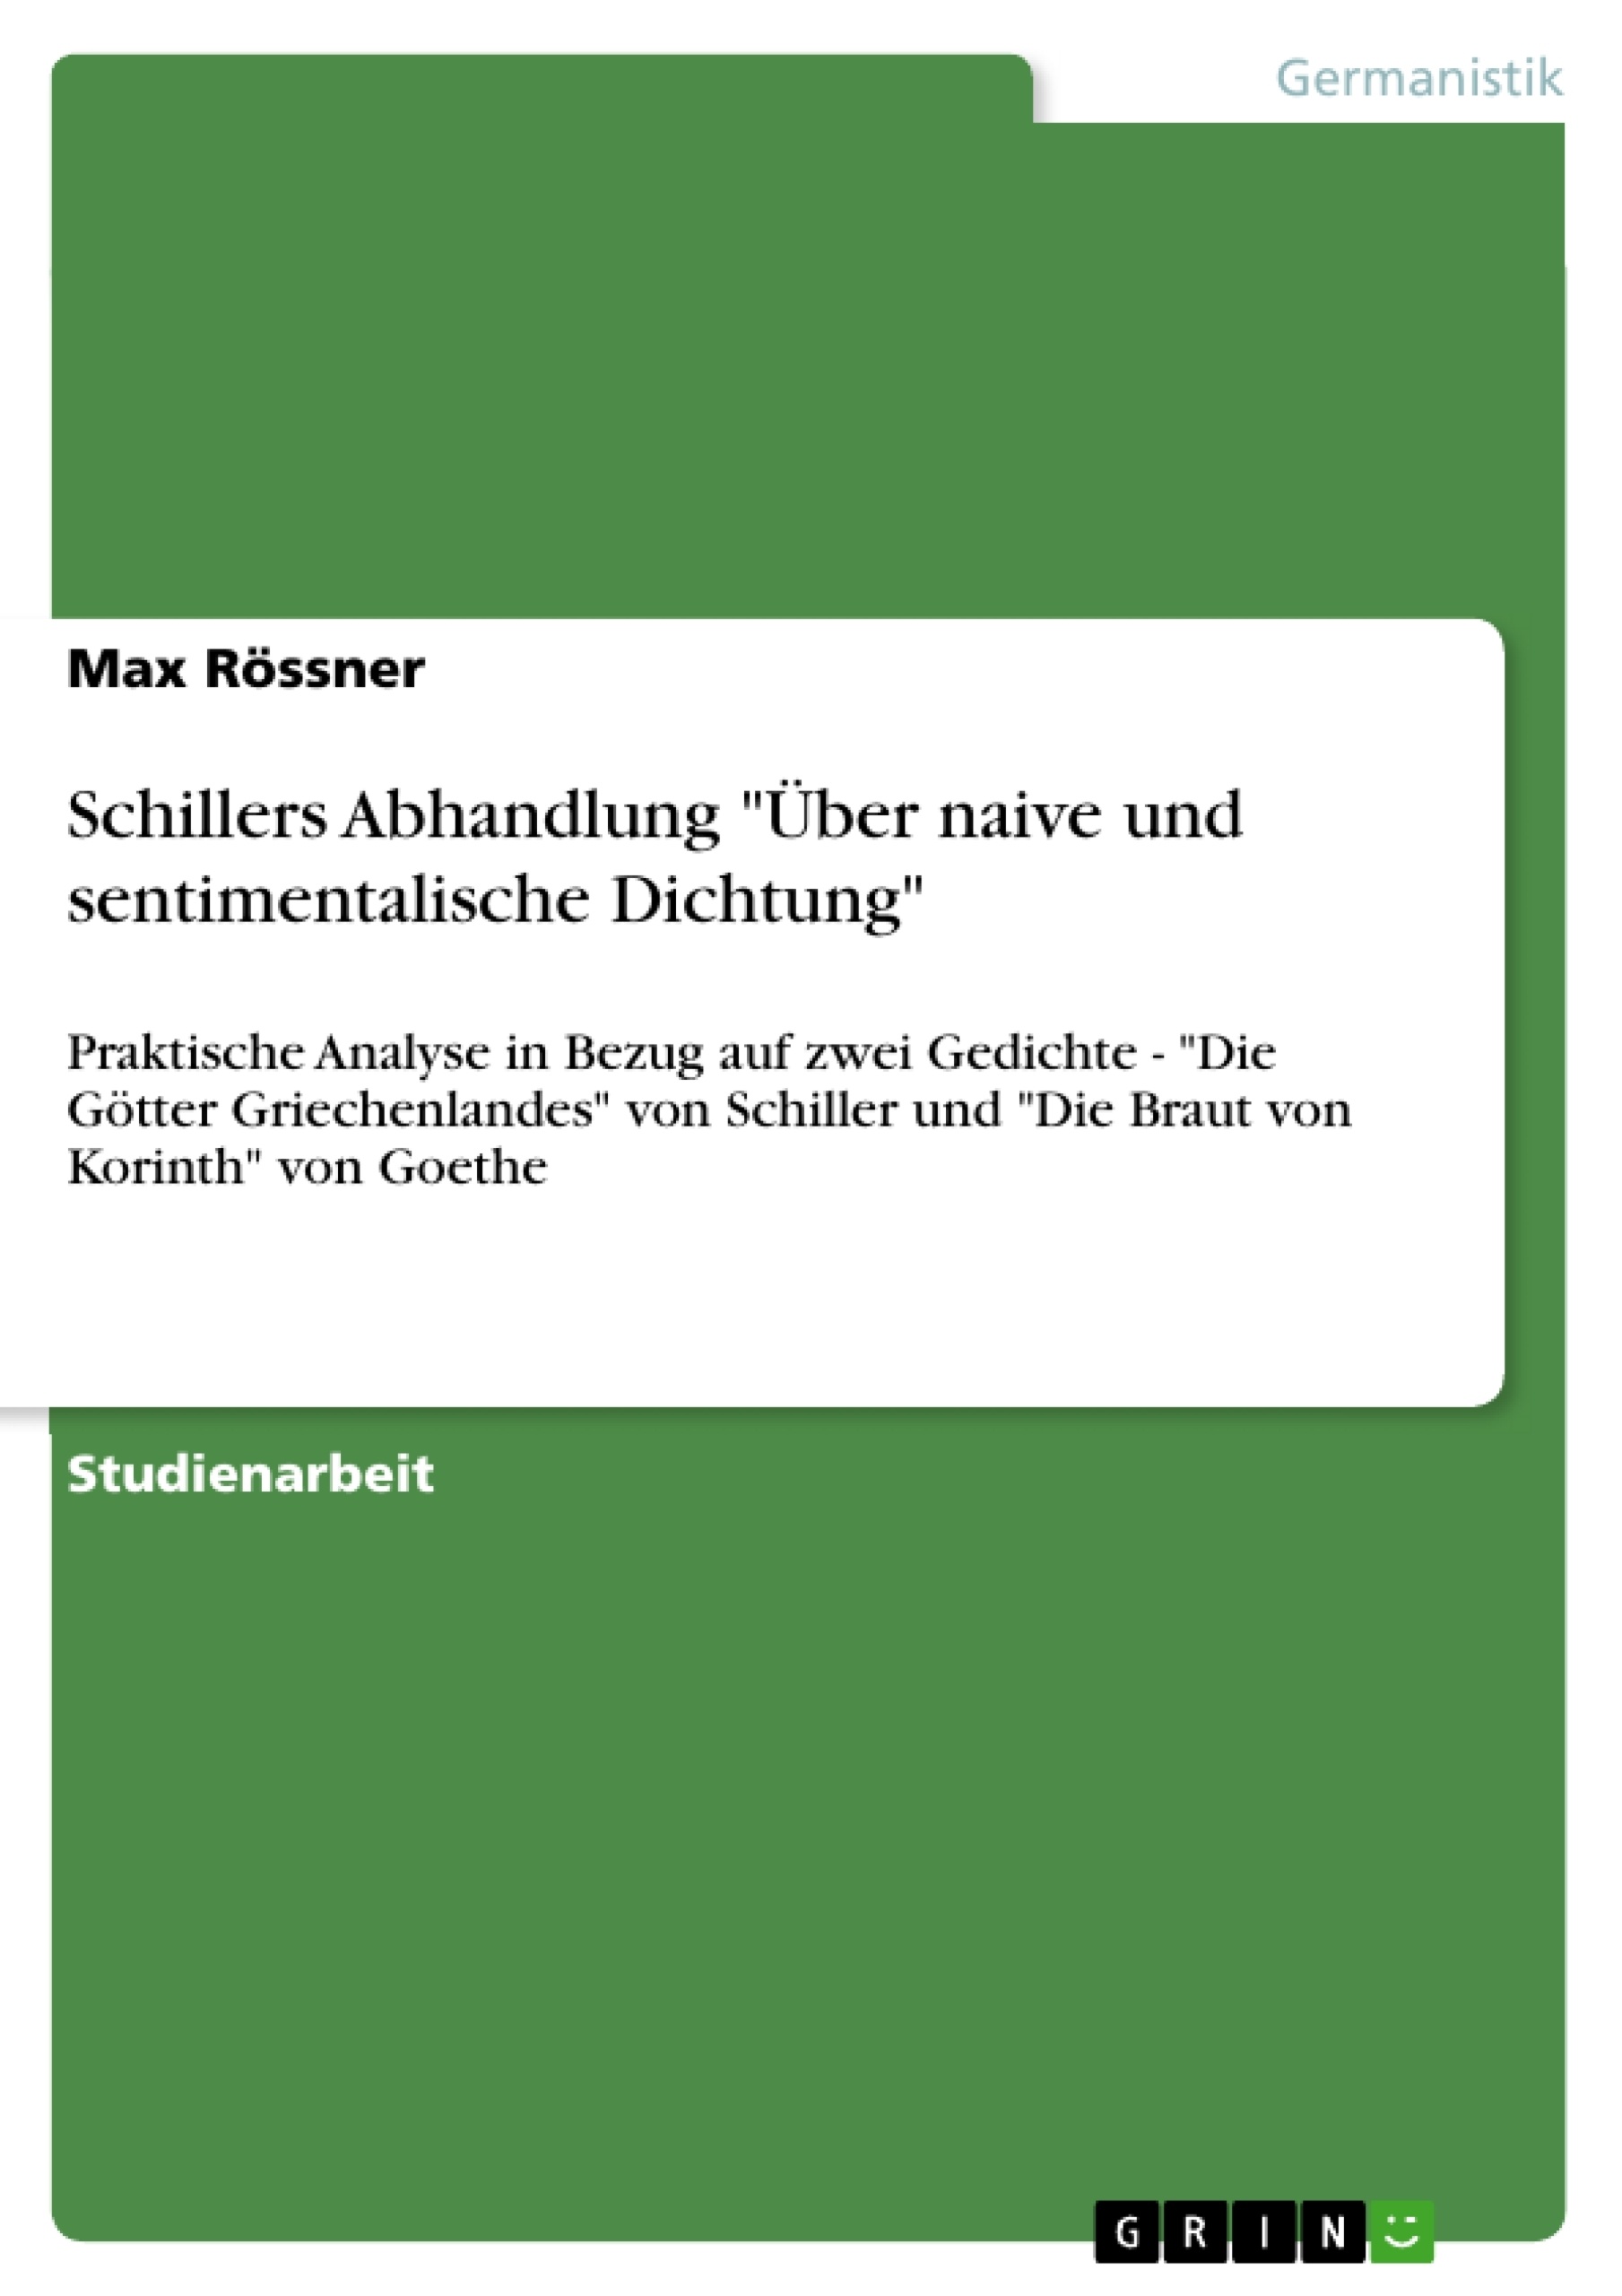 Titre: Schillers Abhandlung "Über naive und sentimentalische Dichtung"